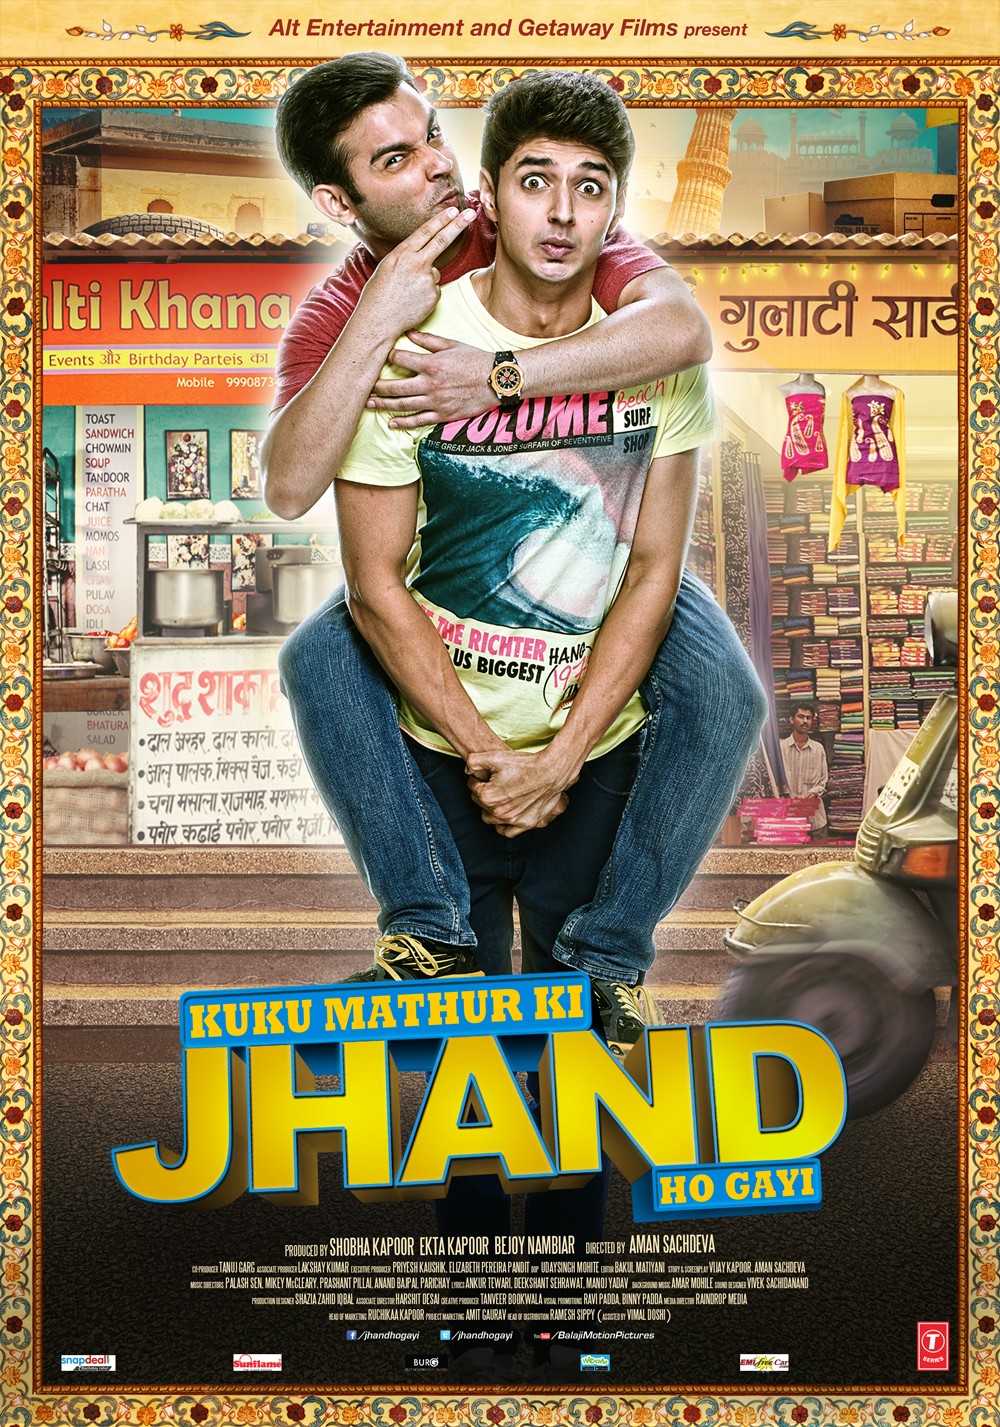 Extra Large Movie Poster Image for Kuku Mathur Ki Jhand Ho Gayi (#5 of 5)